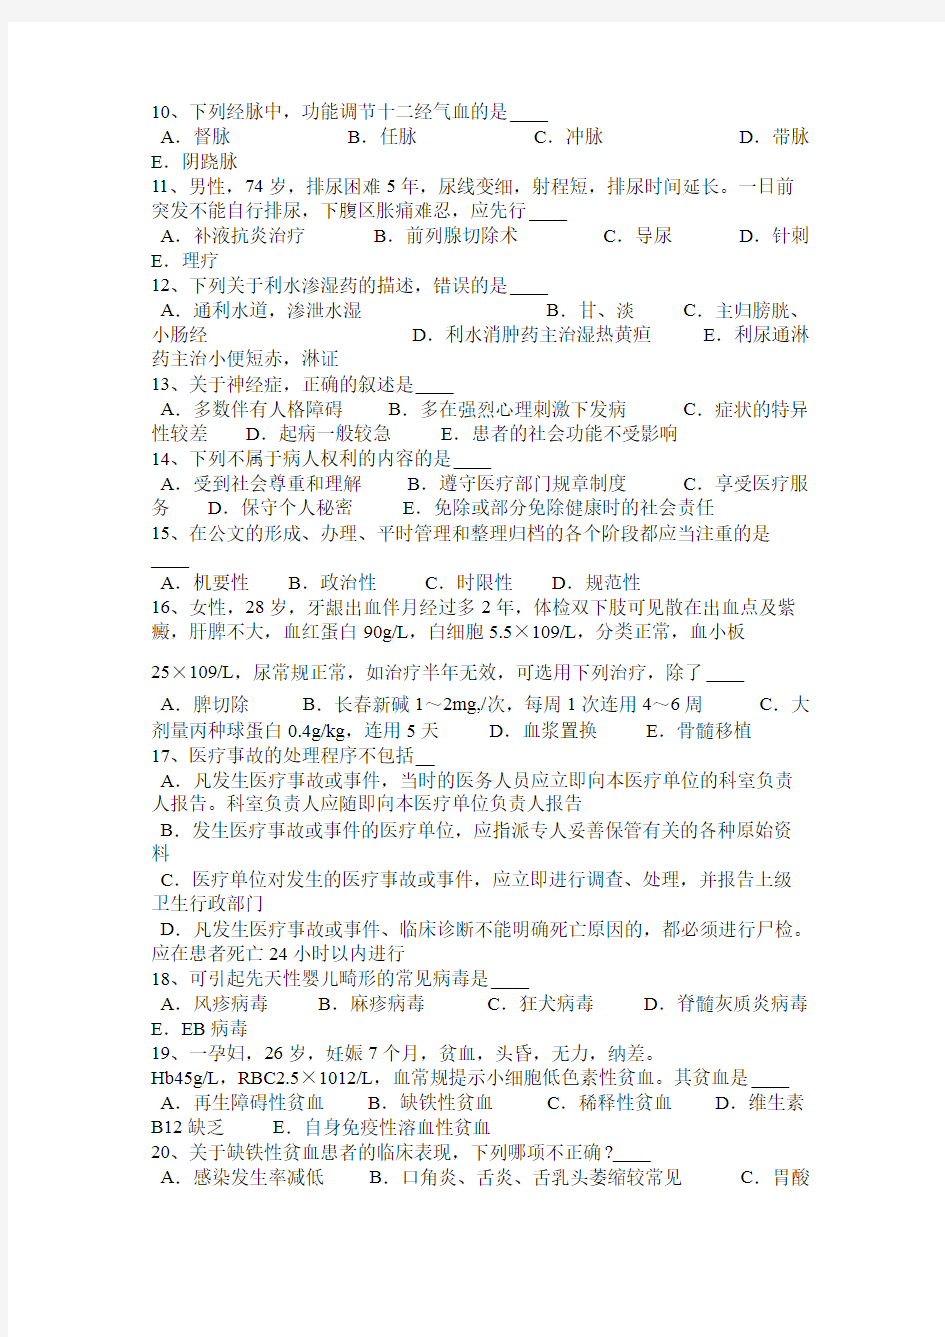 江西省医疗卫生系统事业单位招聘考试试题